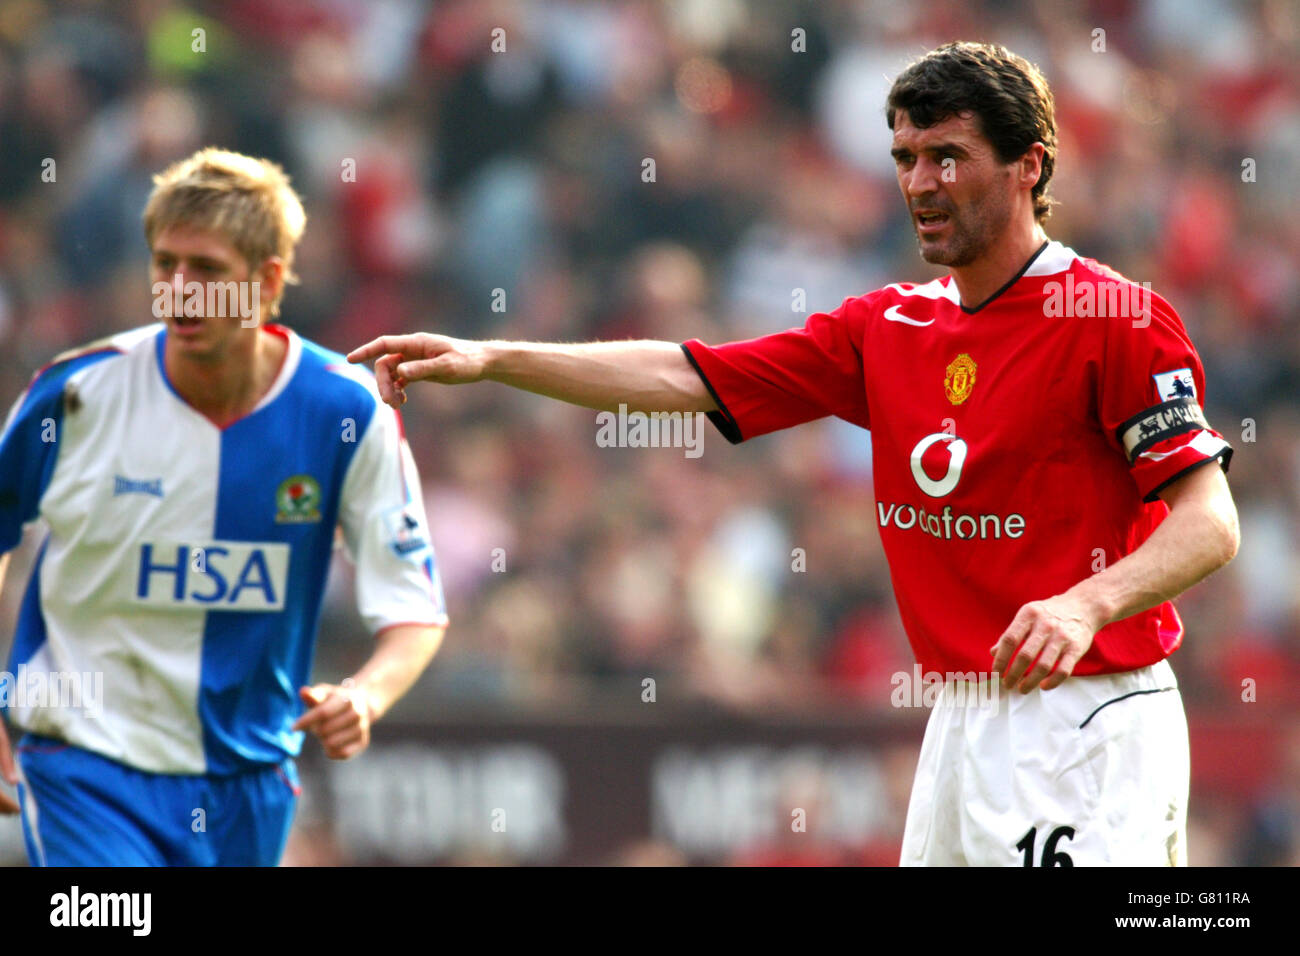 Calcio - fa Barclays Premiership - Manchester United contro Blackburn Rovers - Old Trafford. Roy Keane, Manchester United Foto Stock